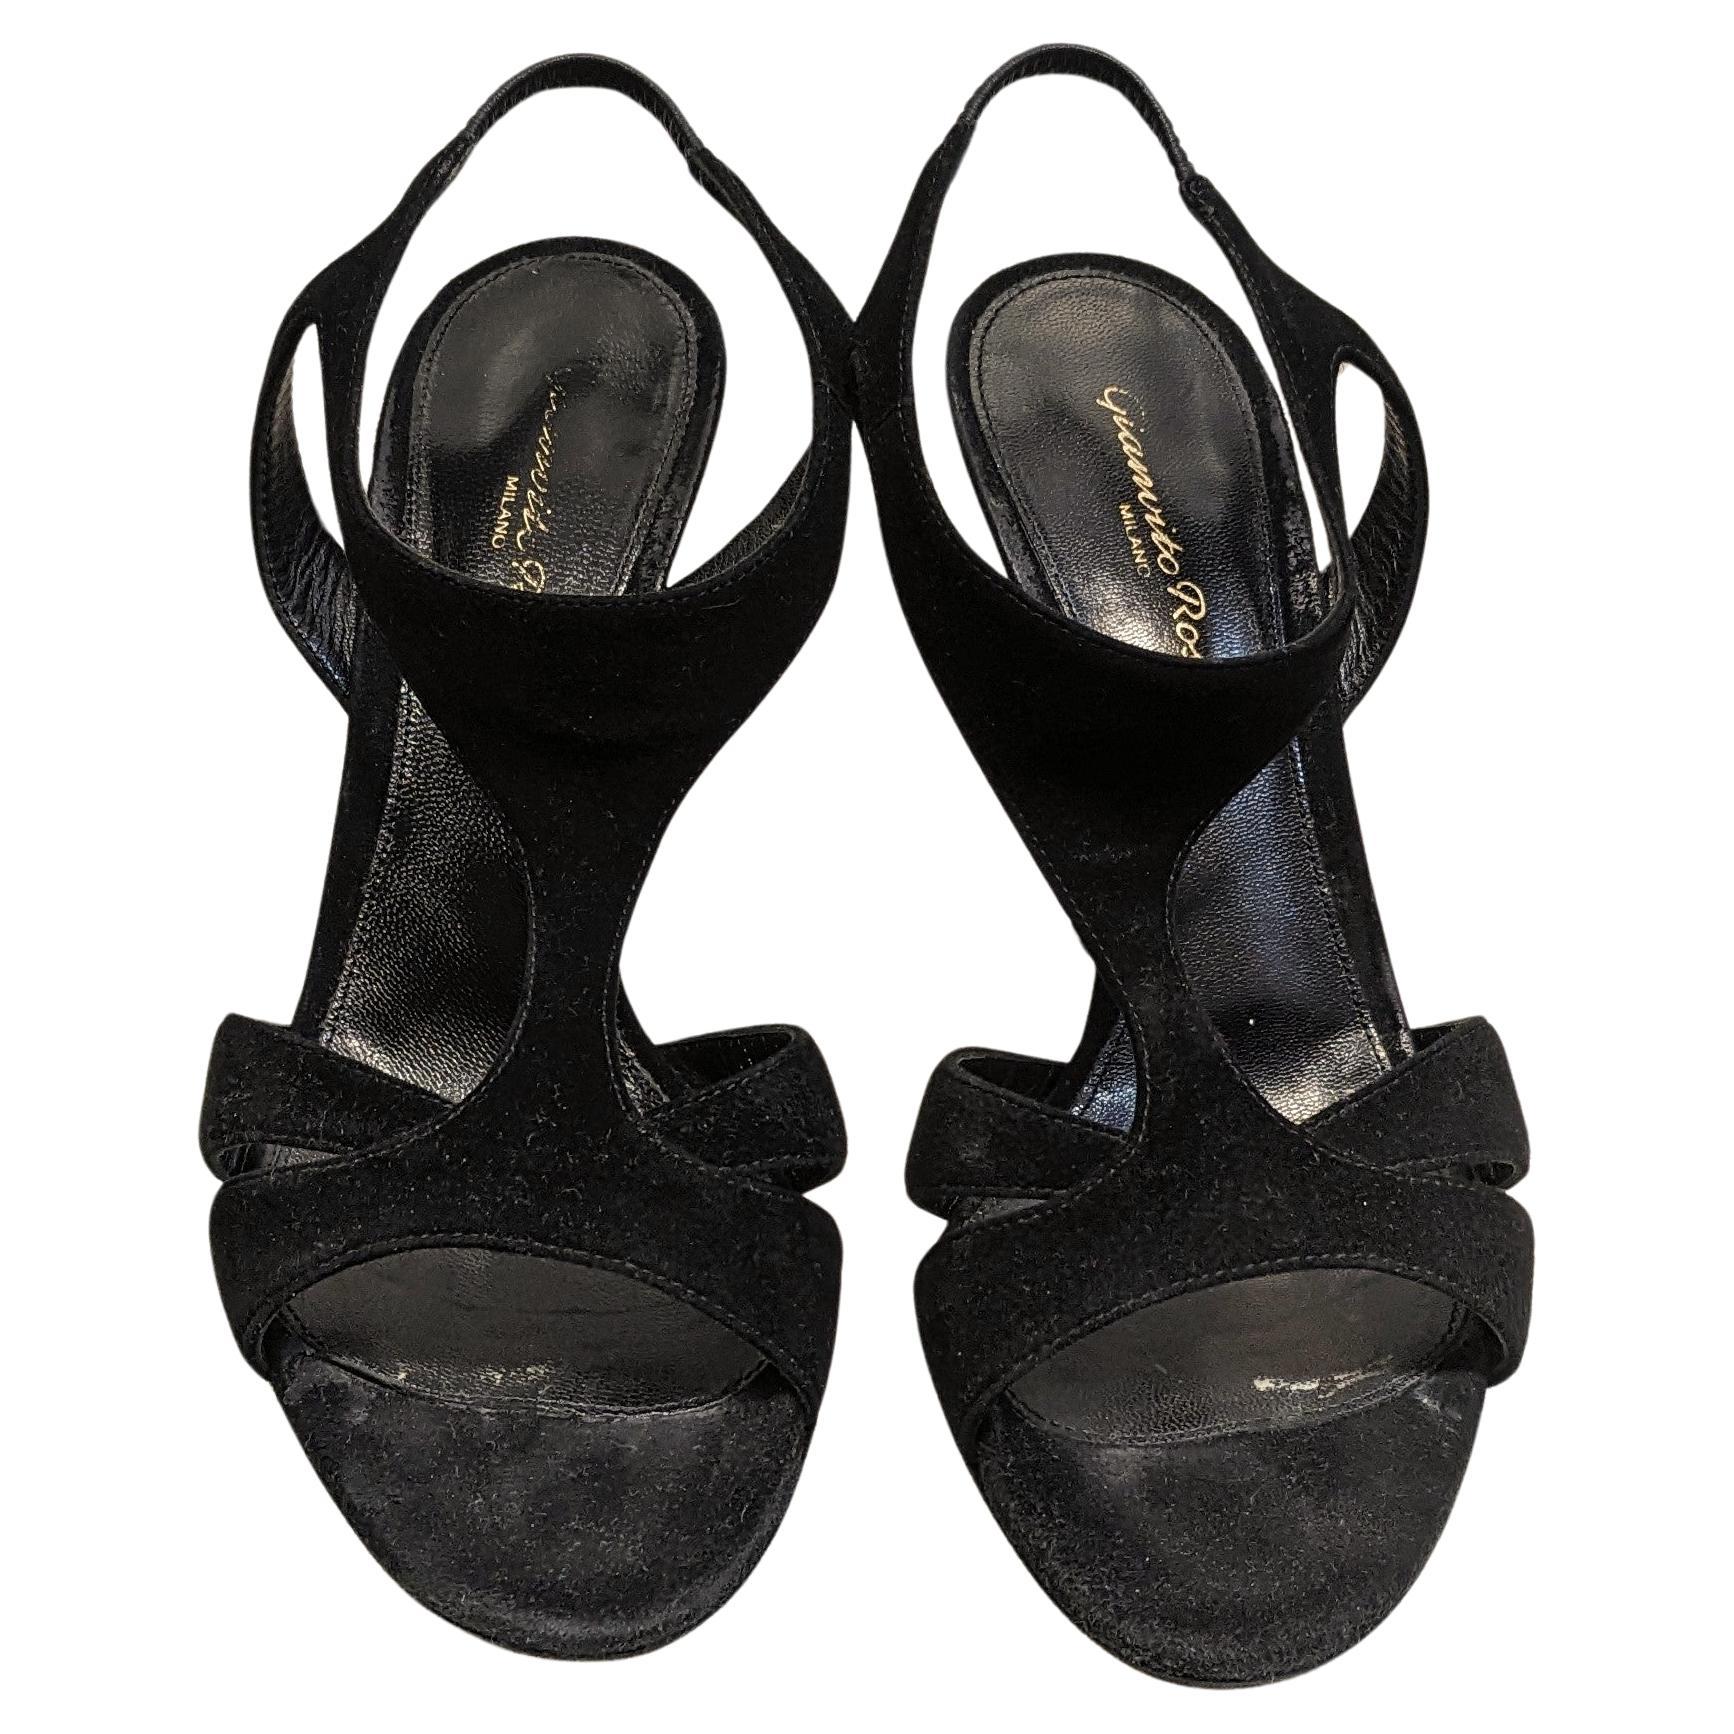 Black Velvet Sandals from Gianvito Rossi